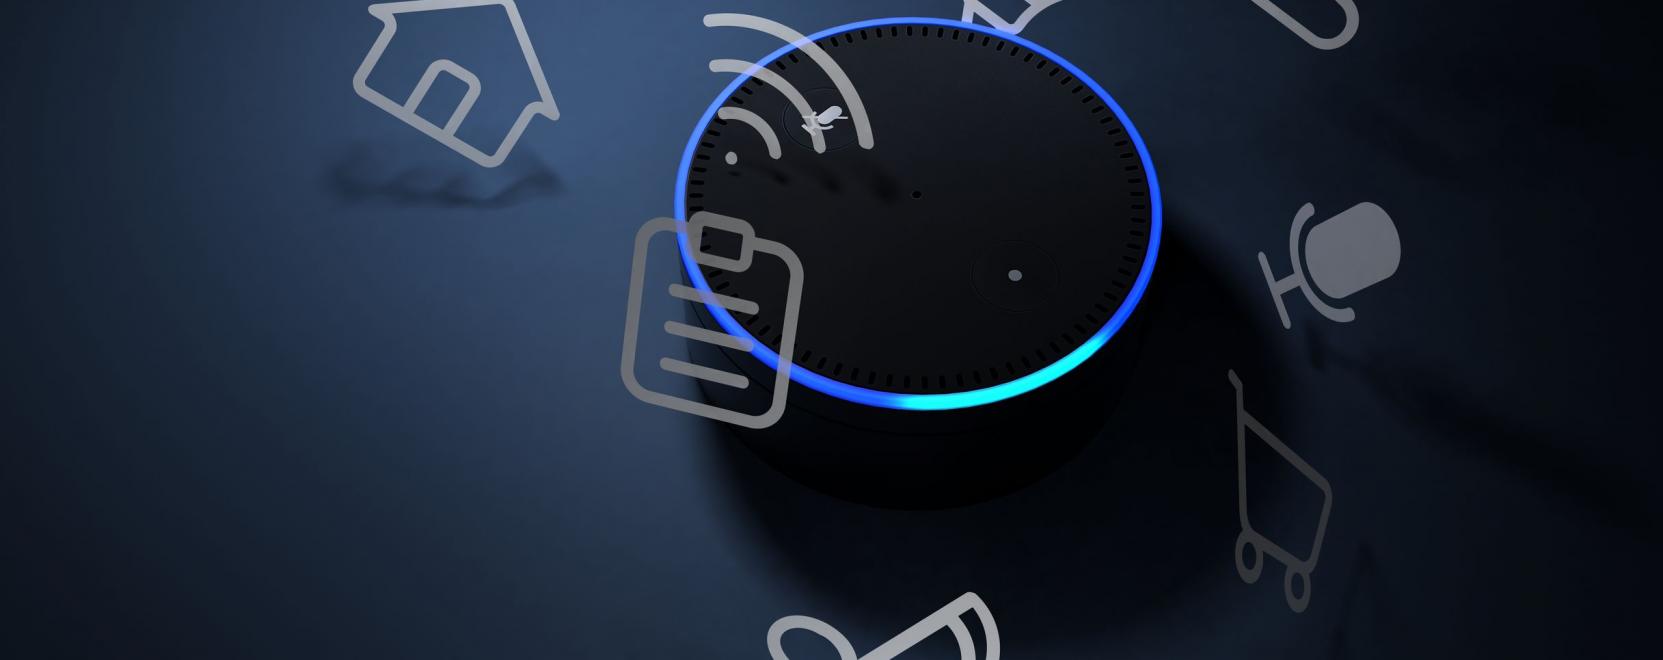 Amazon Alexa a kedvenc előadóinkra is figyel